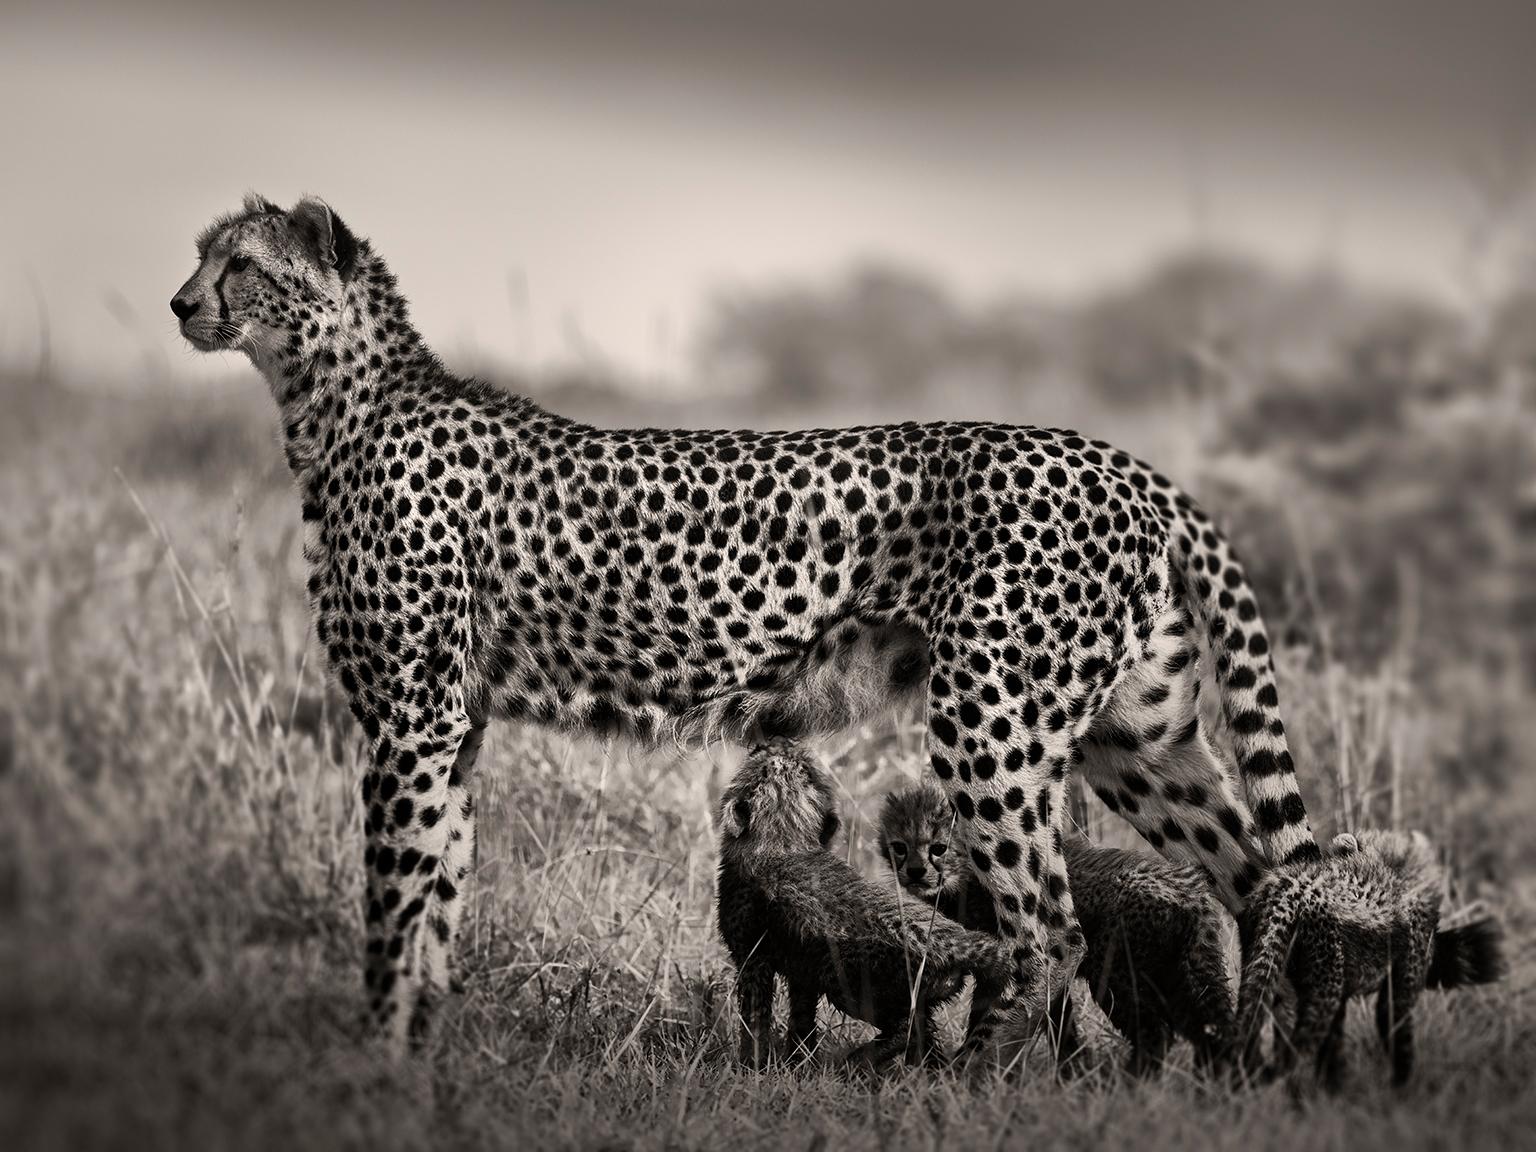 Black and White Photograph Joachim Schmeisser - La guépard allaitant des bébés, photographie de blackandhwite, Afrique, portrait, faune